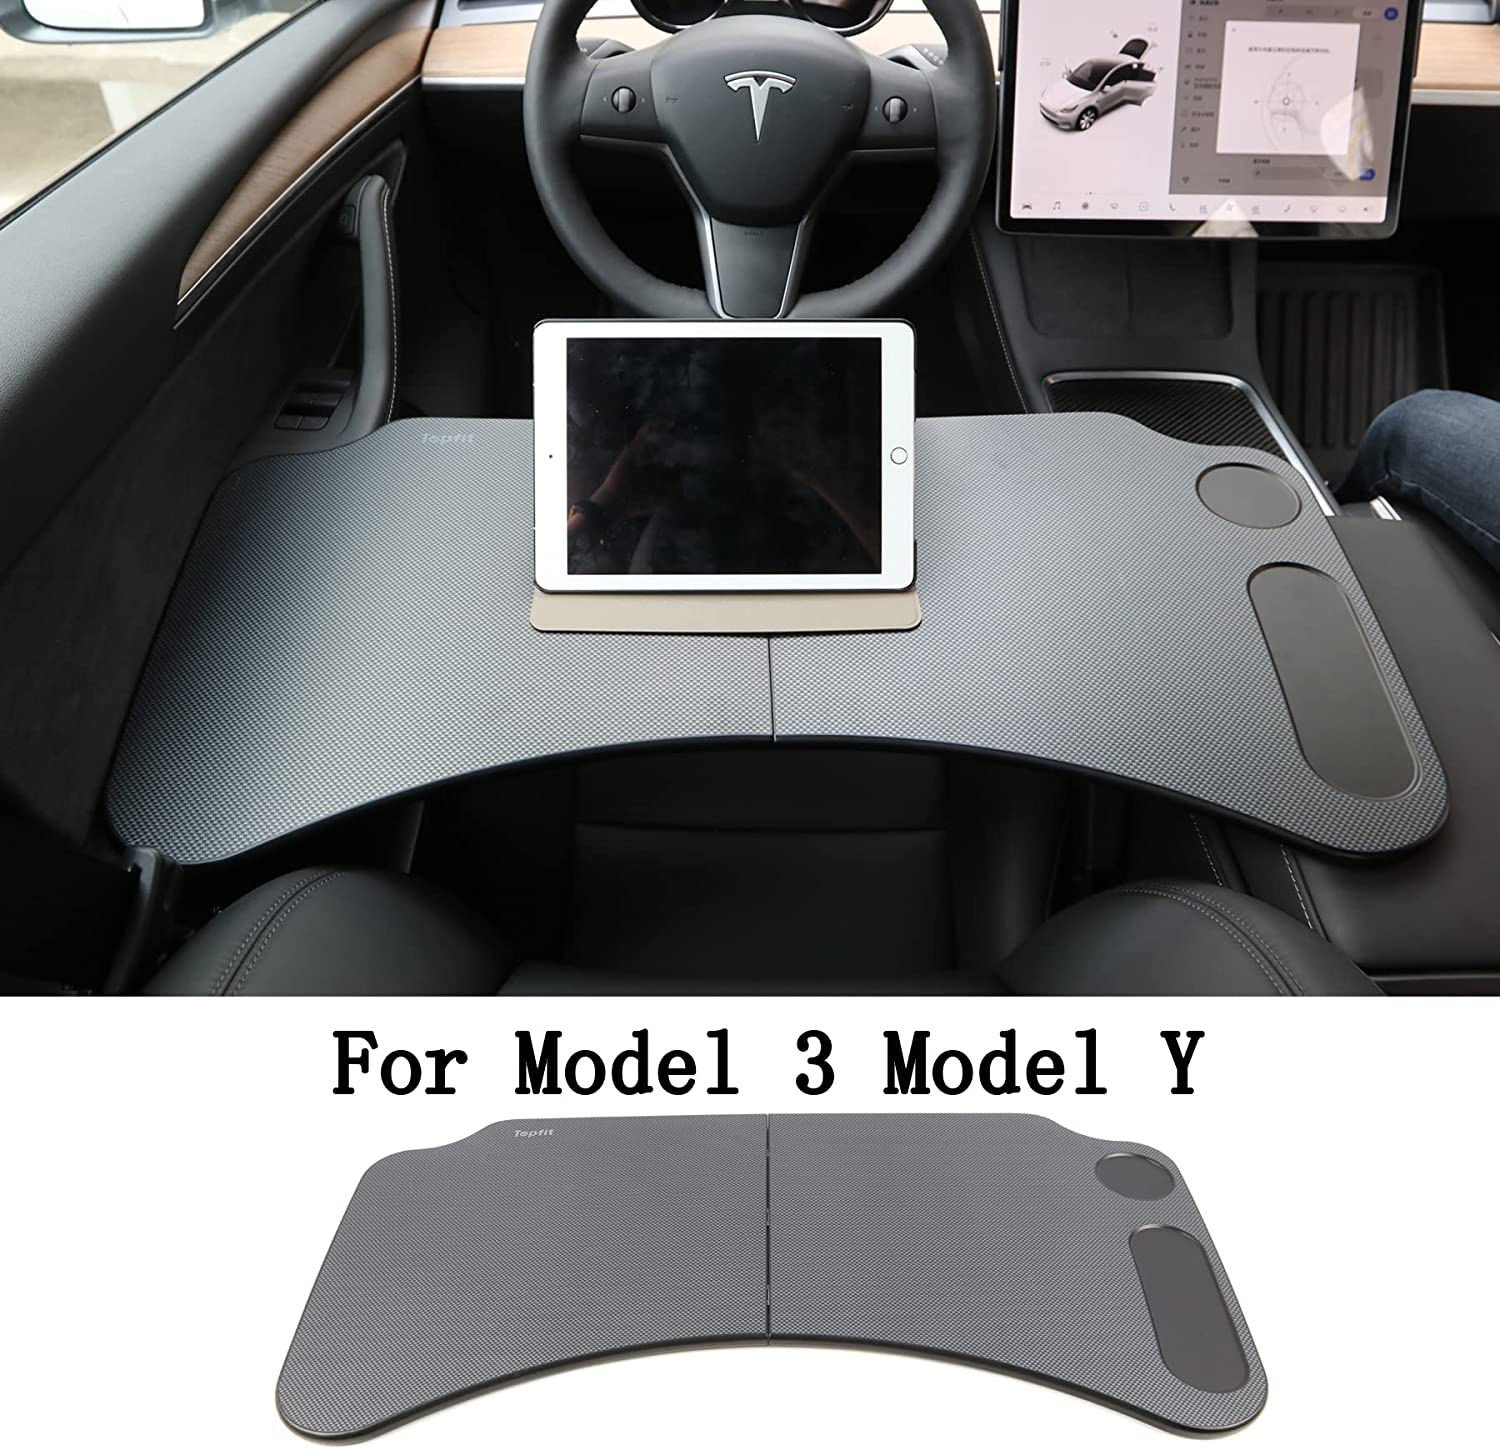 Tesla Model 3 & Model Y Foldable Table/Working Desk